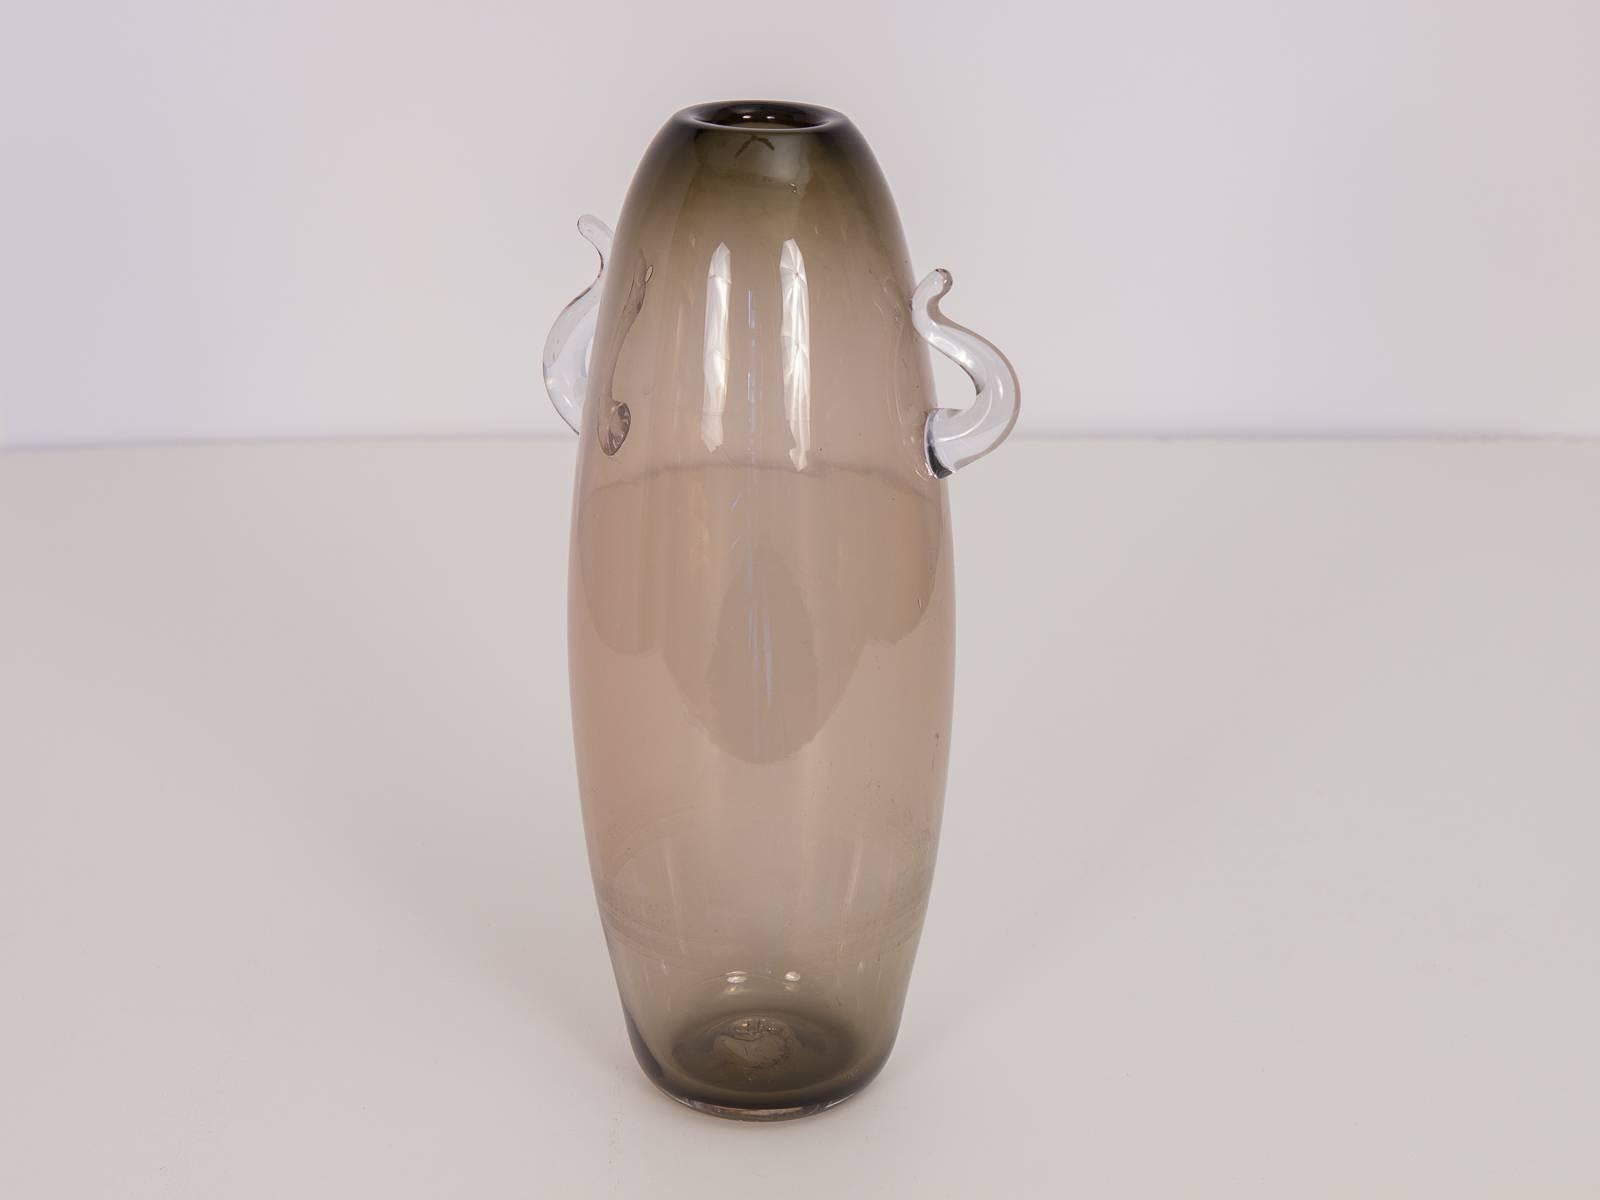 Vase aus mundgeblasenem skandinavischem Rauchglas mit zierlichen geschwungenen Griffen. Die subtile Farbabstufung von der Öffnung bis zum Boden unterstreicht das schlichte Profil dieser eleganten Vase. In ausgezeichnetem Zustand, praktisch ohne